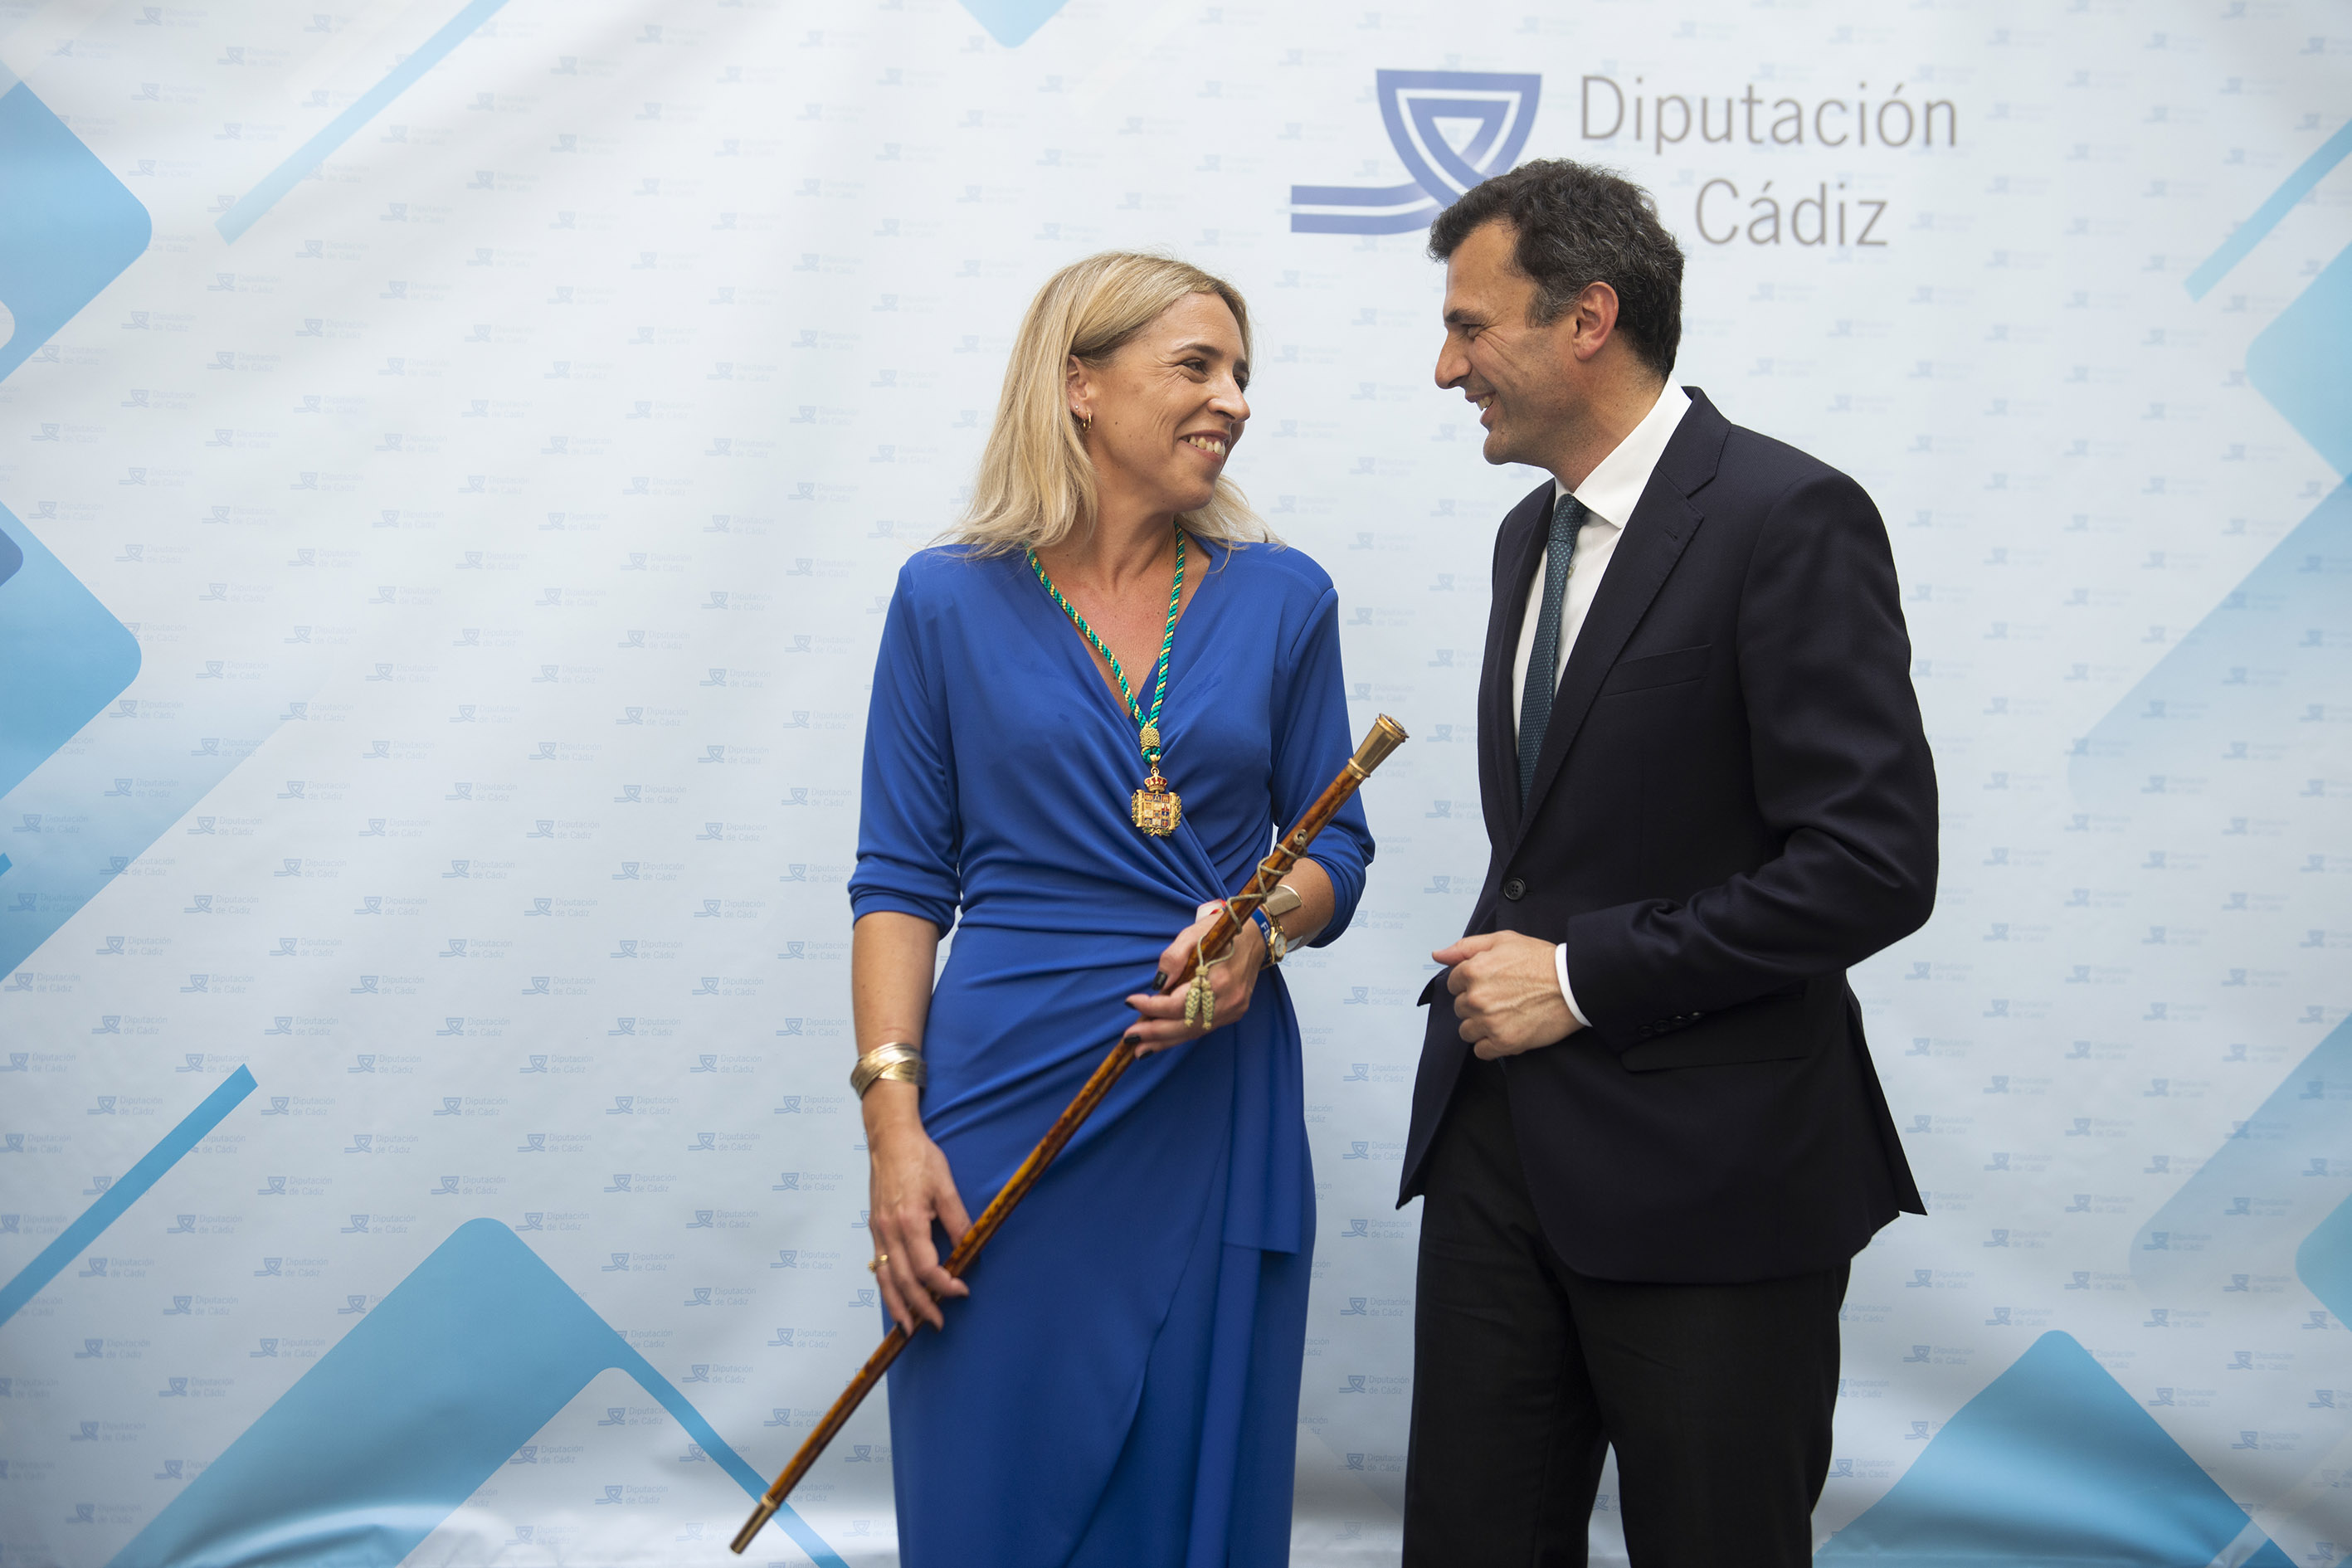 La presidenta de la Diputación, Almudena Martínez, con el alcalde de Cádiz, Bruno García